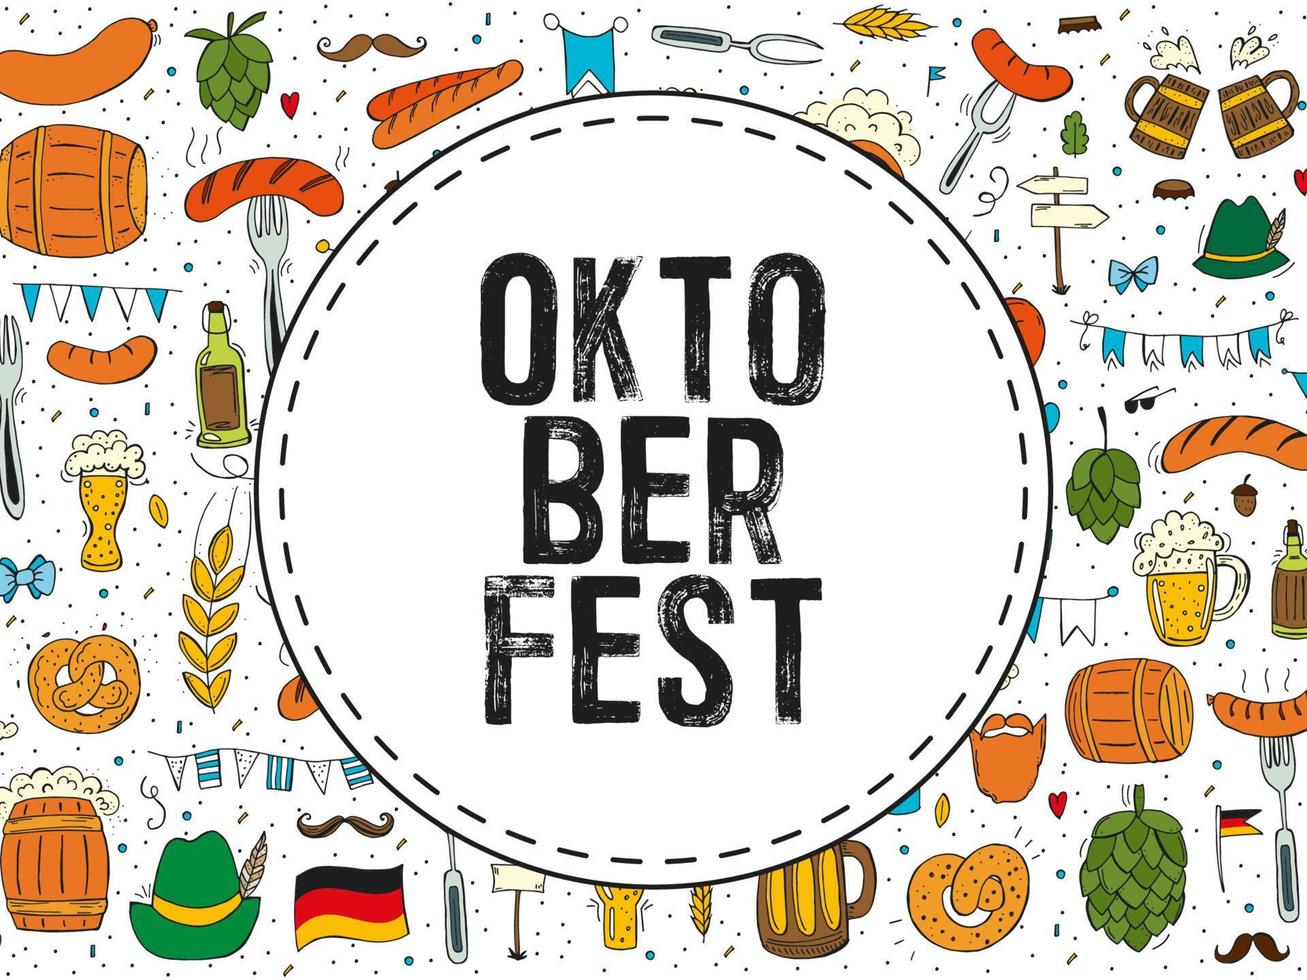 oktoberfest 2022 - festival da cerveja. elementos de doodle desenhados à mão. feriado tradicional alemão. emblema redondo com texto no fundo de um padrão de elementos coloridos. vetor